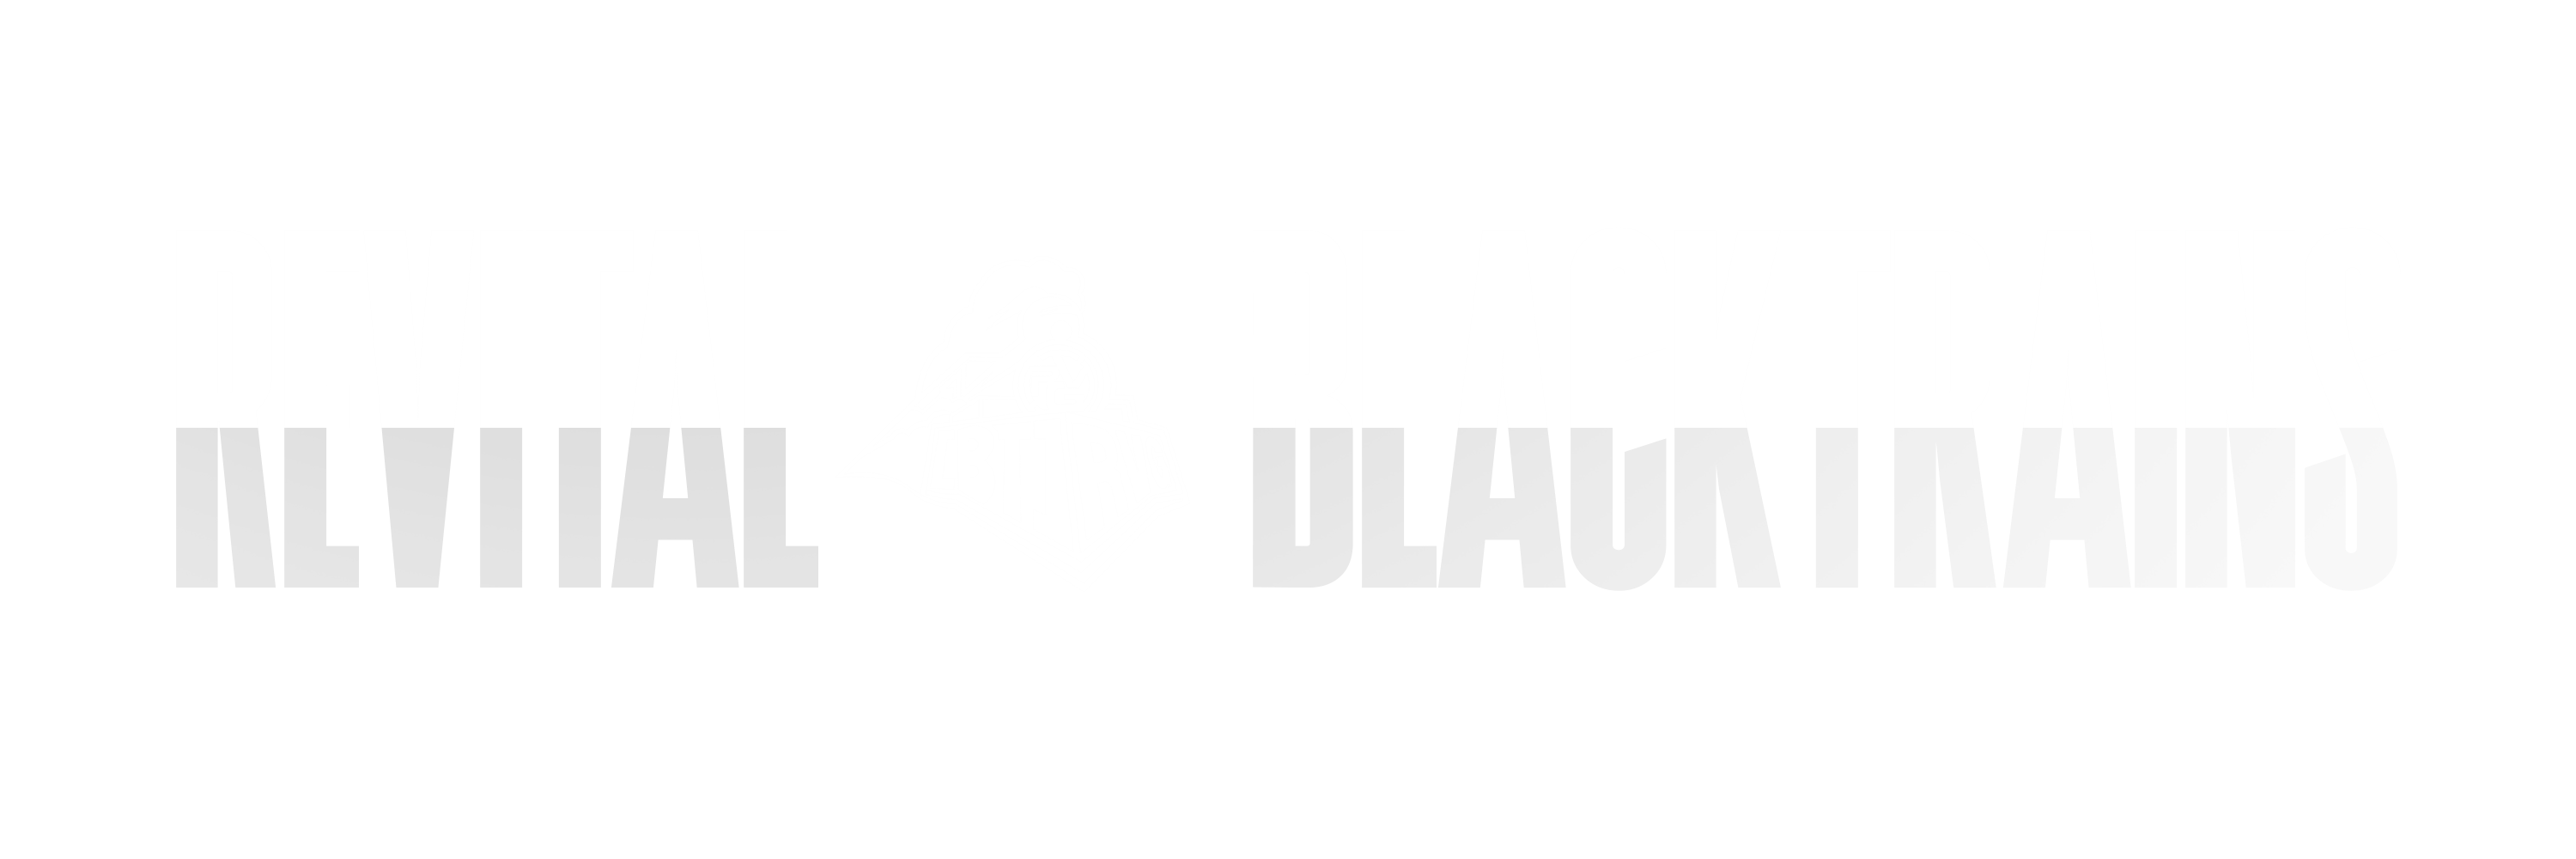 logo revital blacktrains